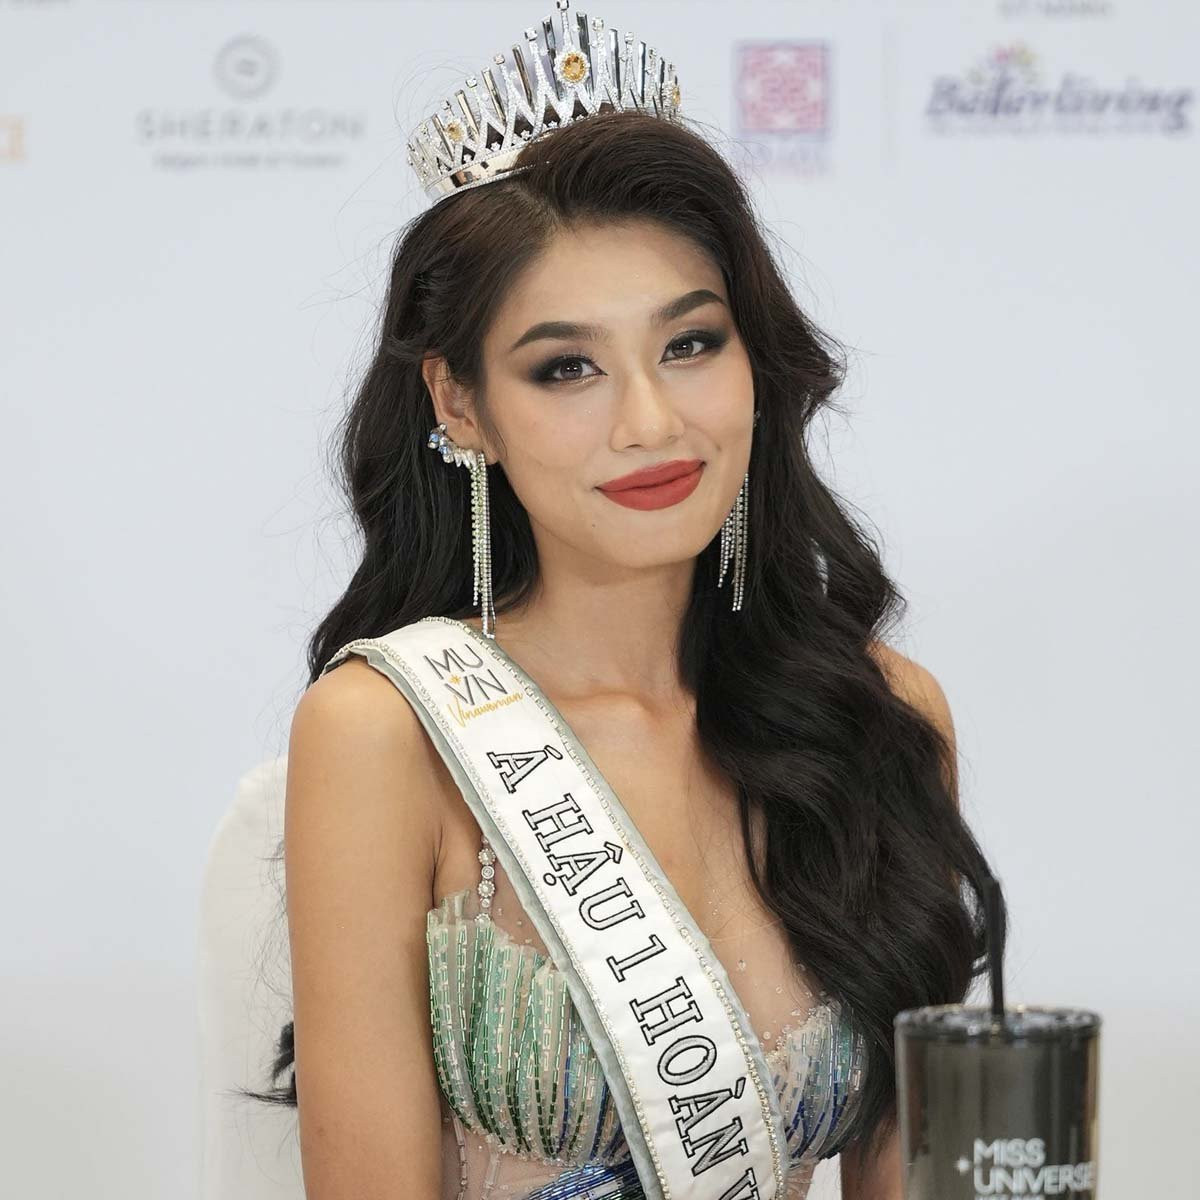 Thảo Nhi Lê chính thức mất suất thi Miss Universe, người thay thế lộ diện - ảnh 1